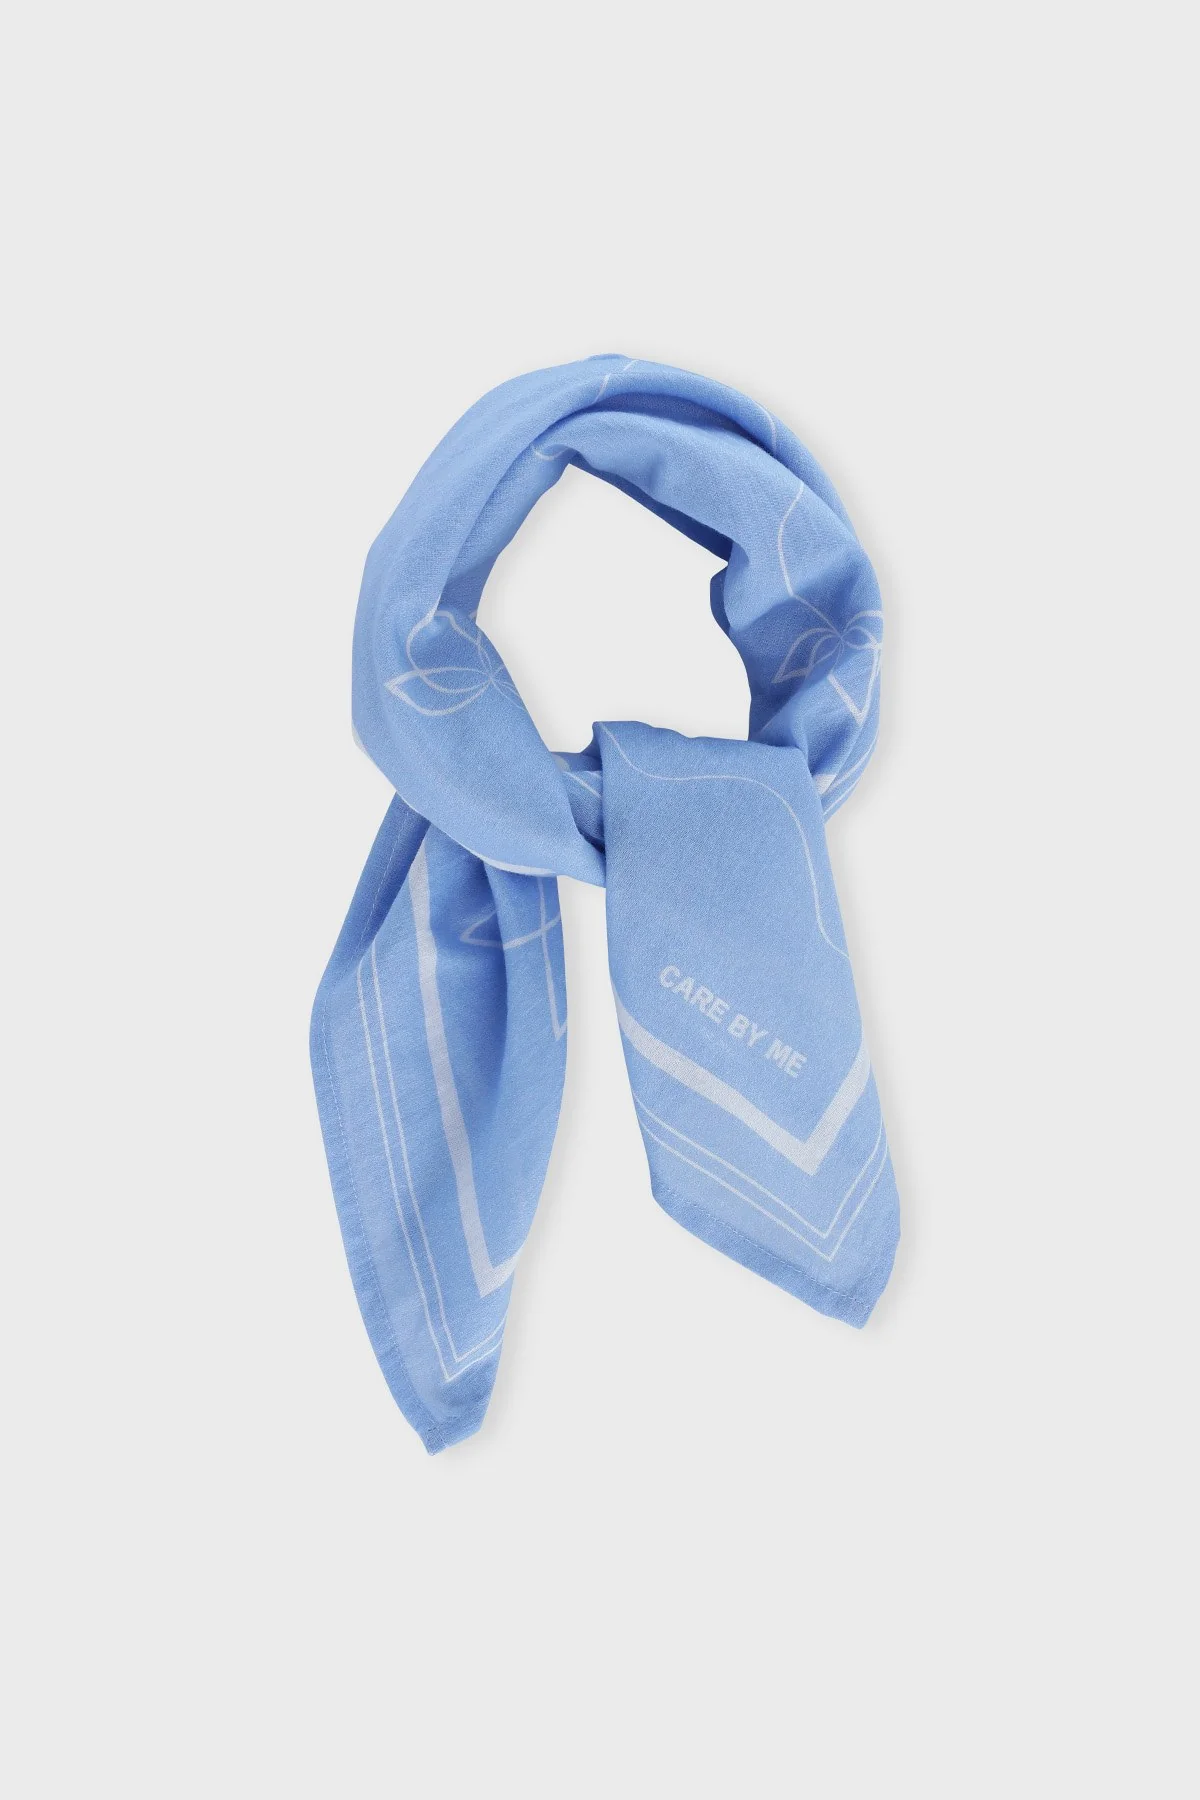 Care by Me - Lotus tørklæde - Summer blue/White print - to størrelser